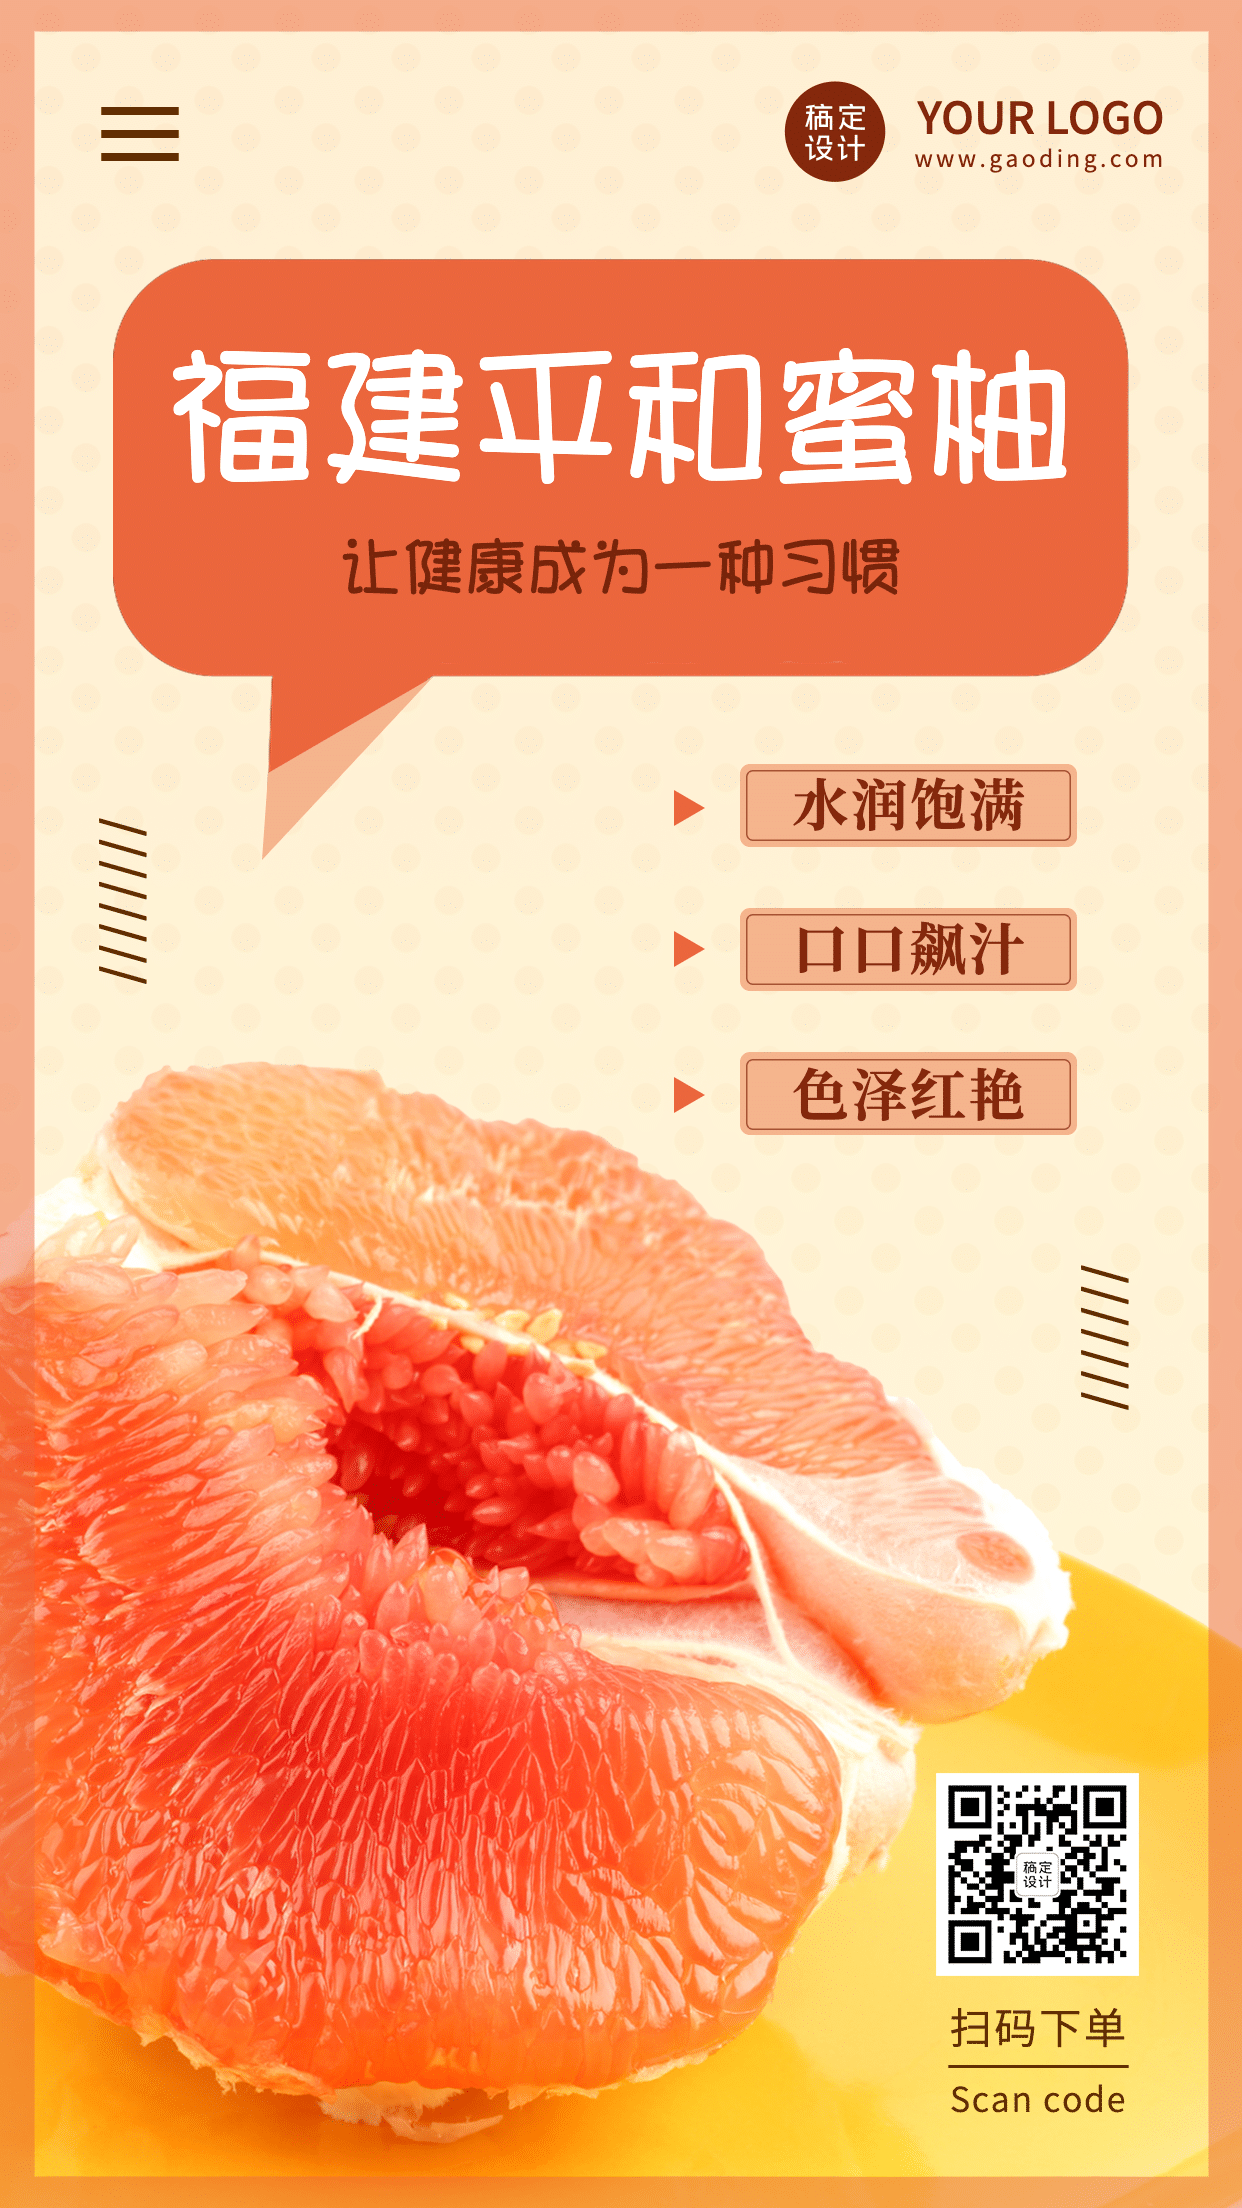 柚子食品特产产品展示手机海报预览效果